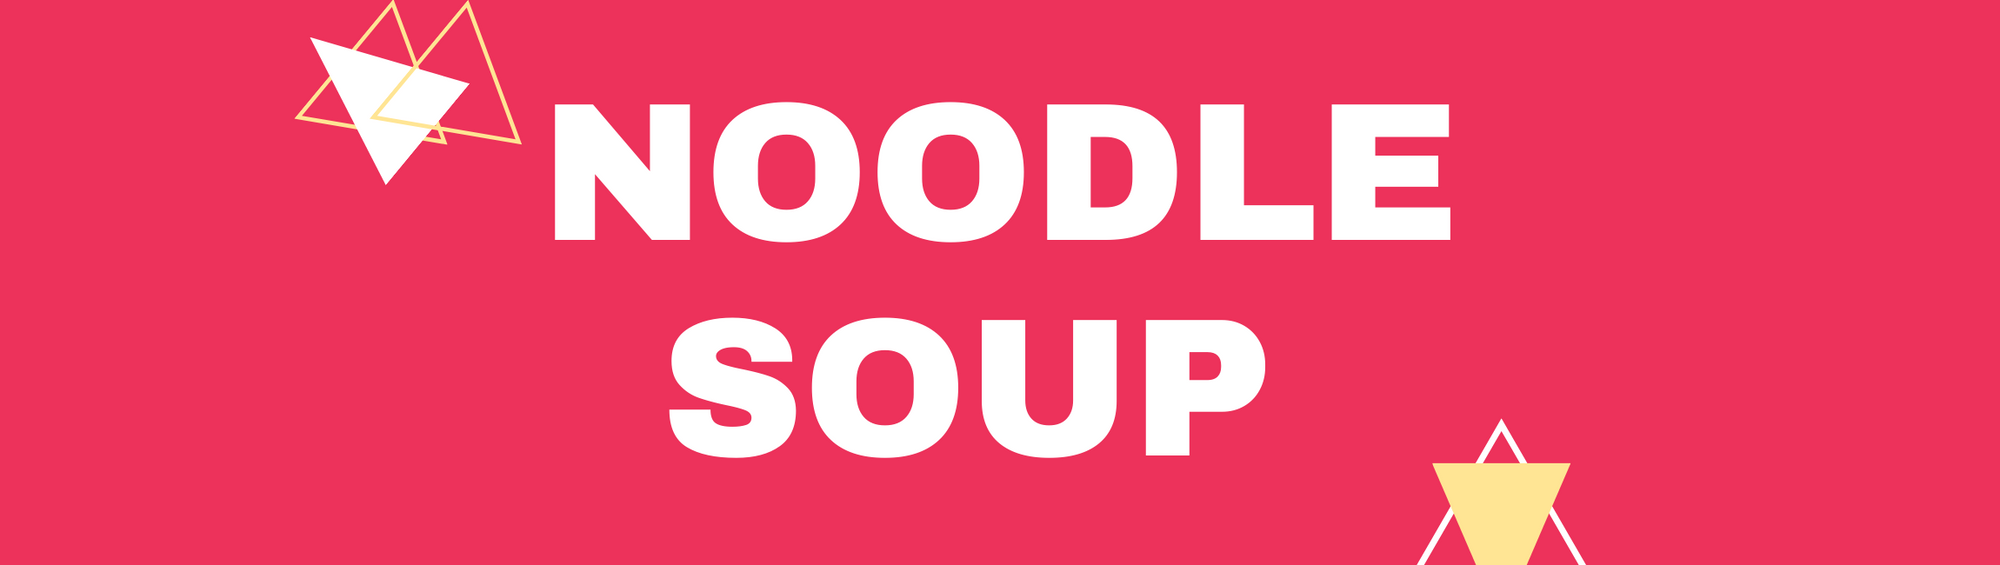 Noodle Soup Special